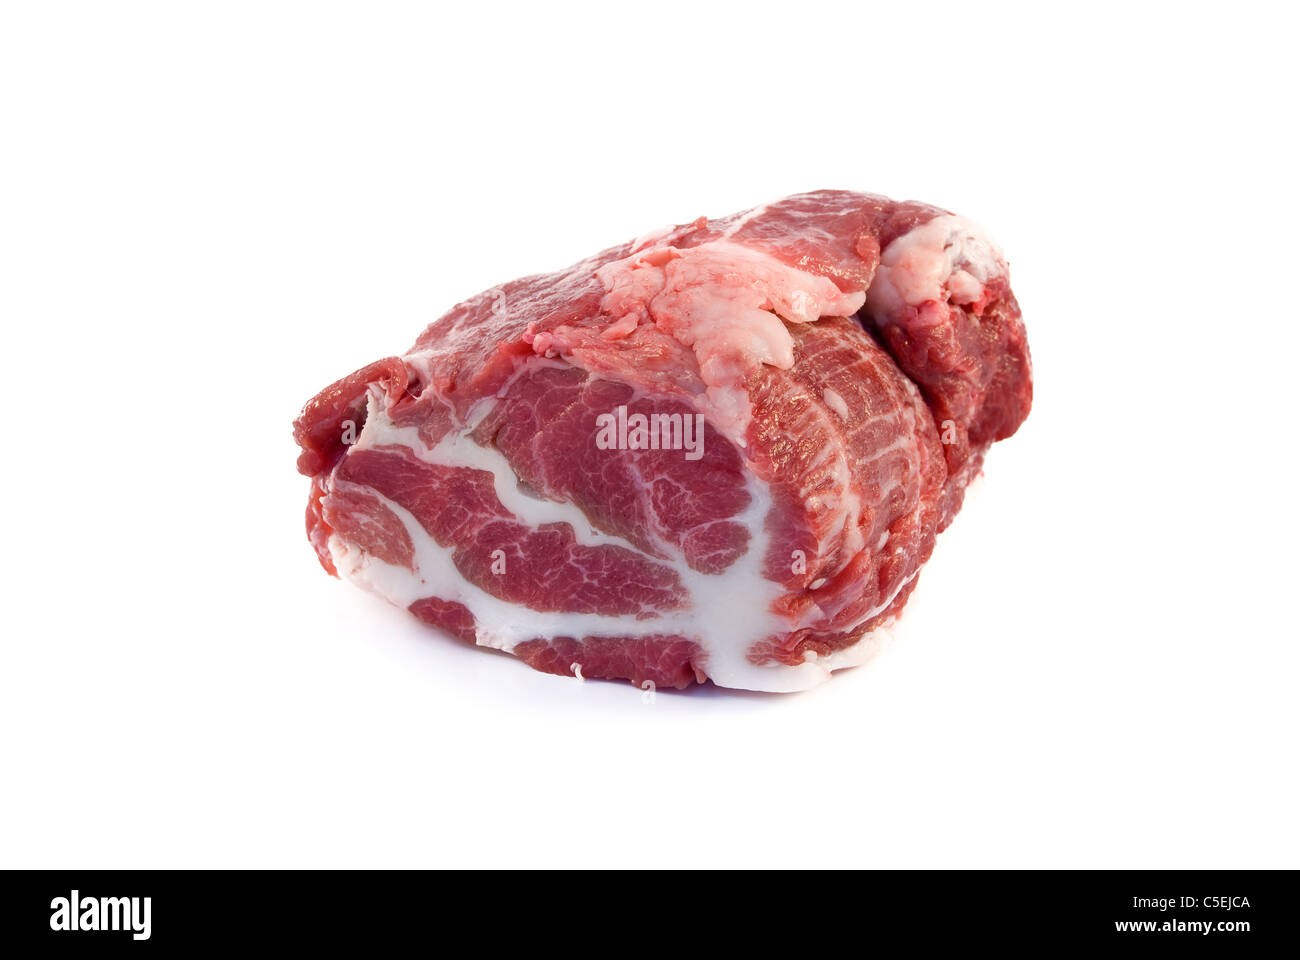 Das Stück rohes Fleisch wird auf einem weißen Hintergrund isoliert Stockfoto